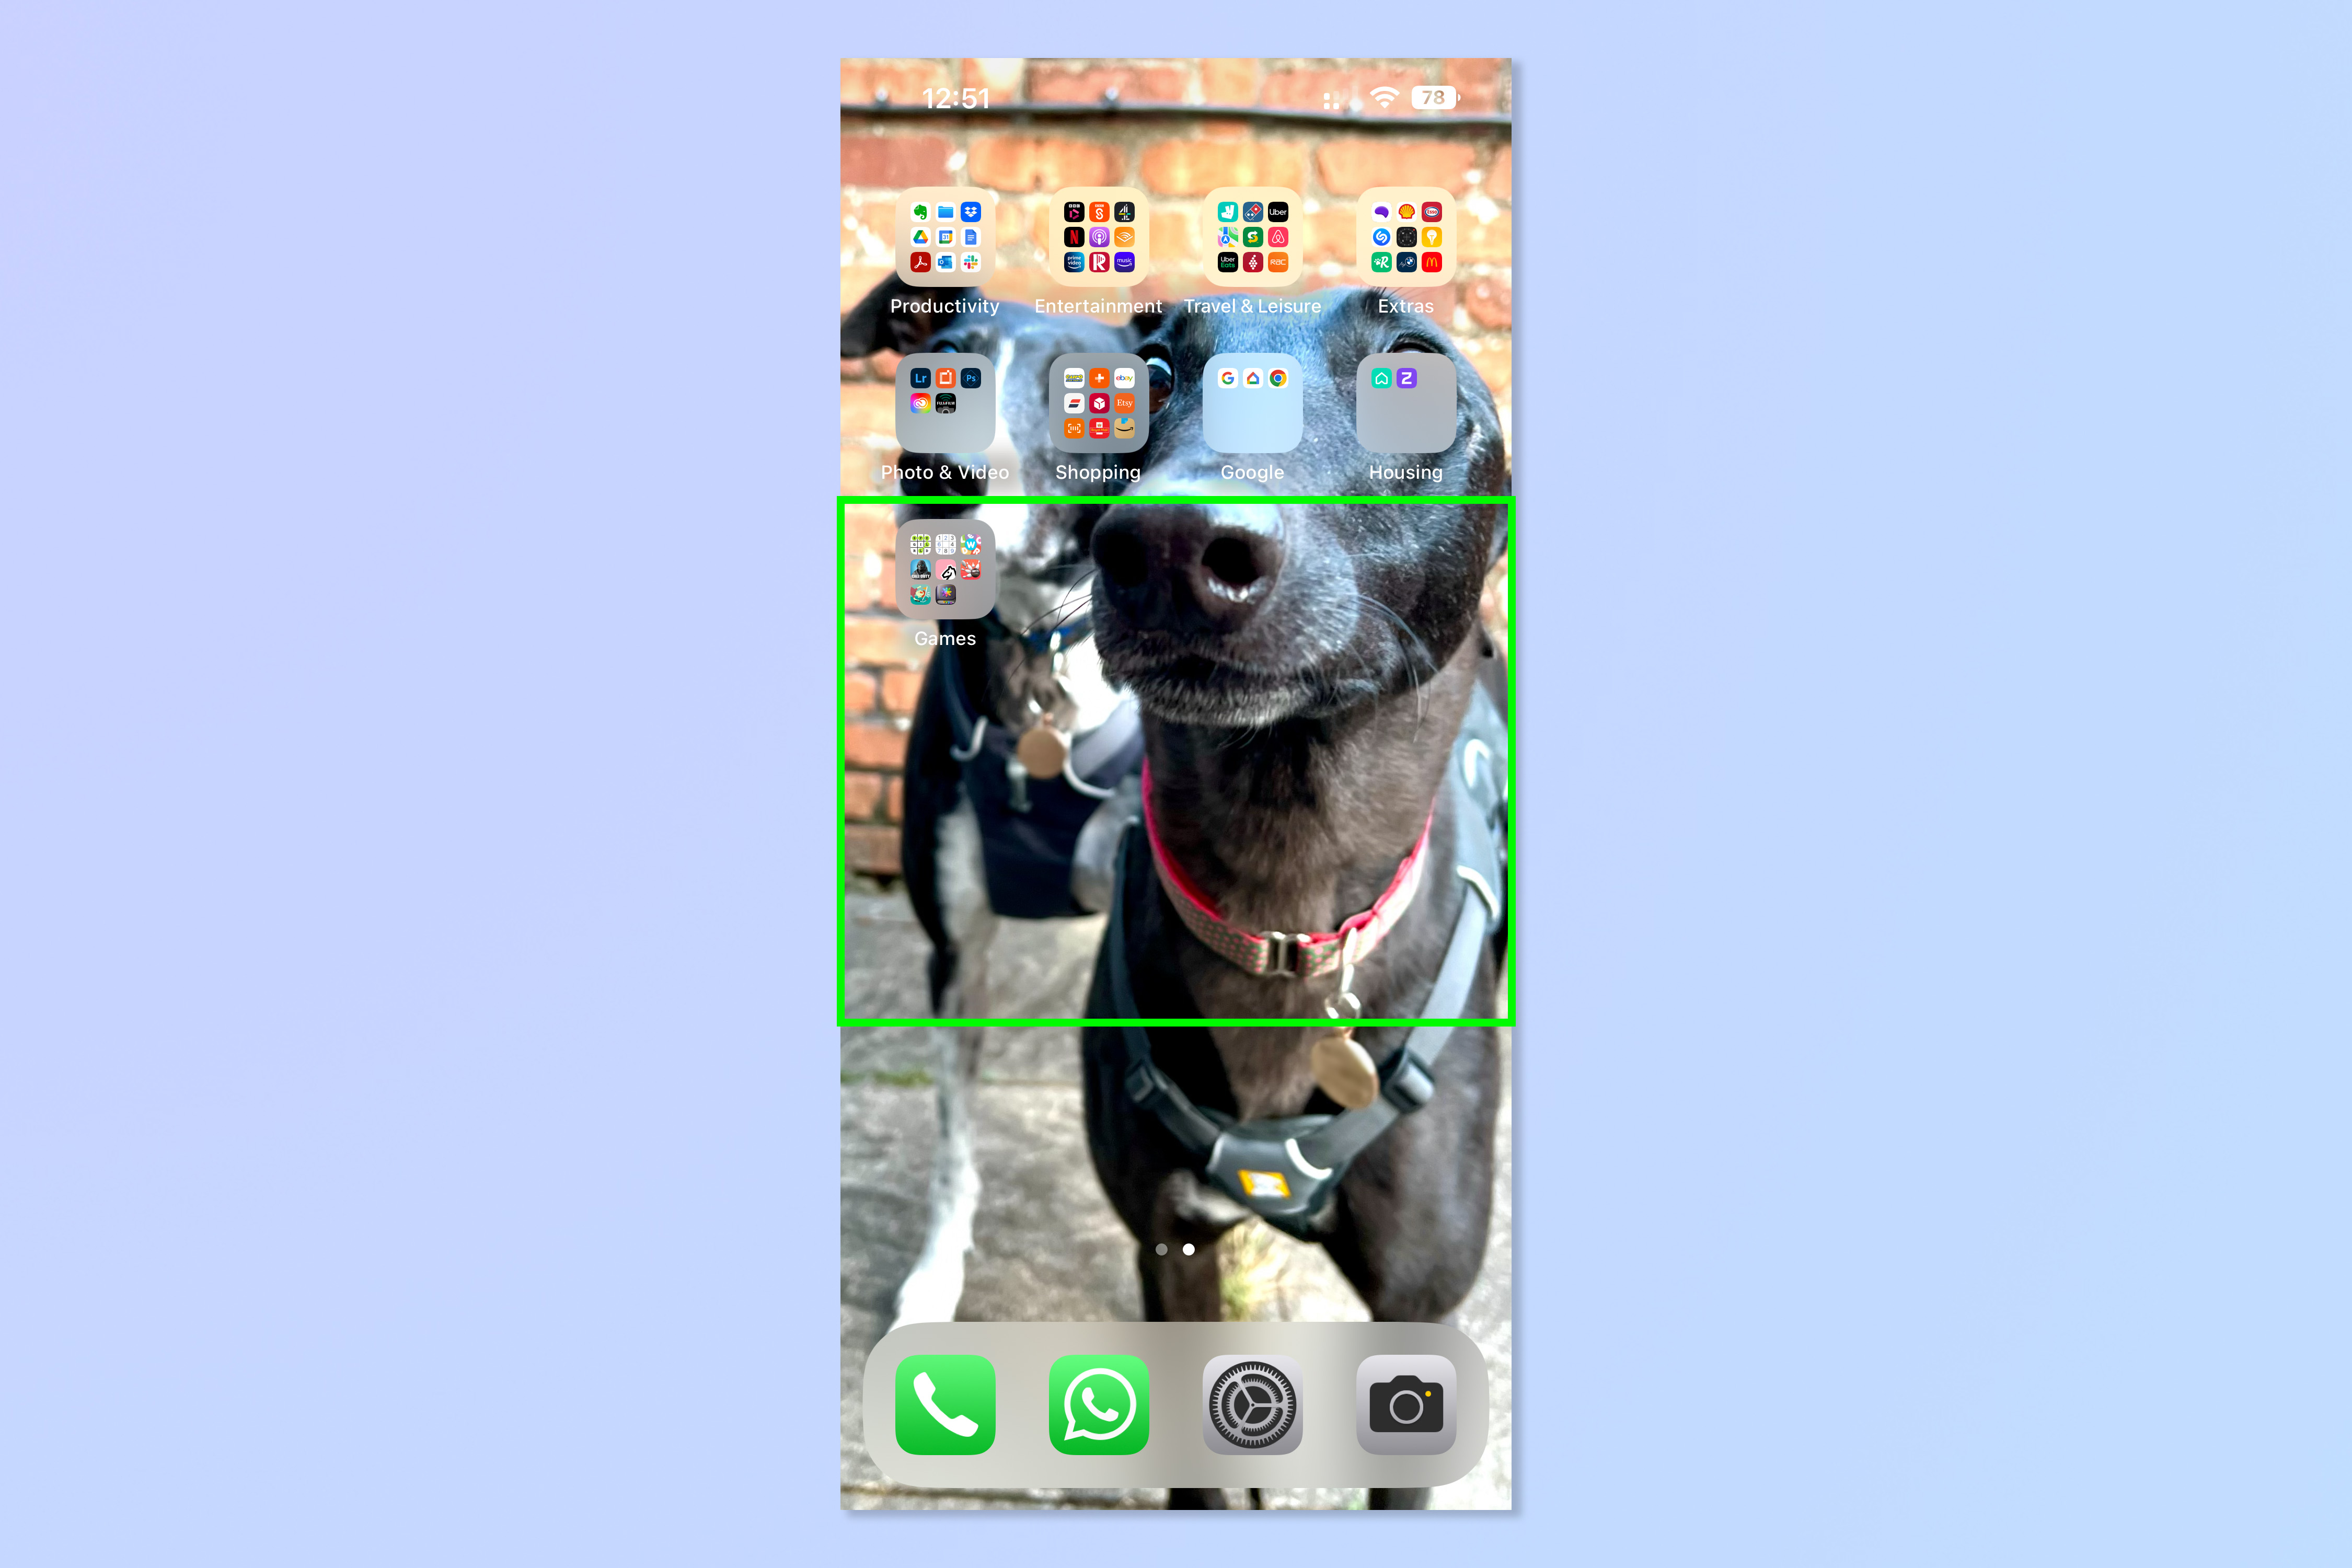 Снимок экрана, показывающий шаги, необходимые для автоматического скрытия новых приложений на iPhone.